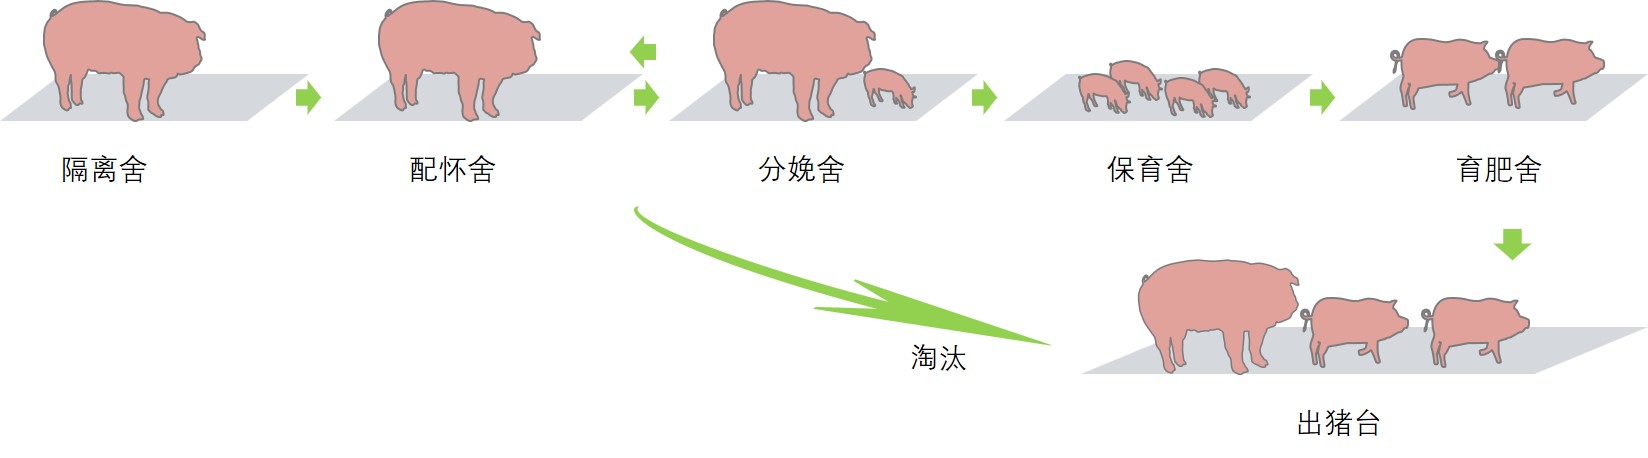 猪的活动路径.jpg